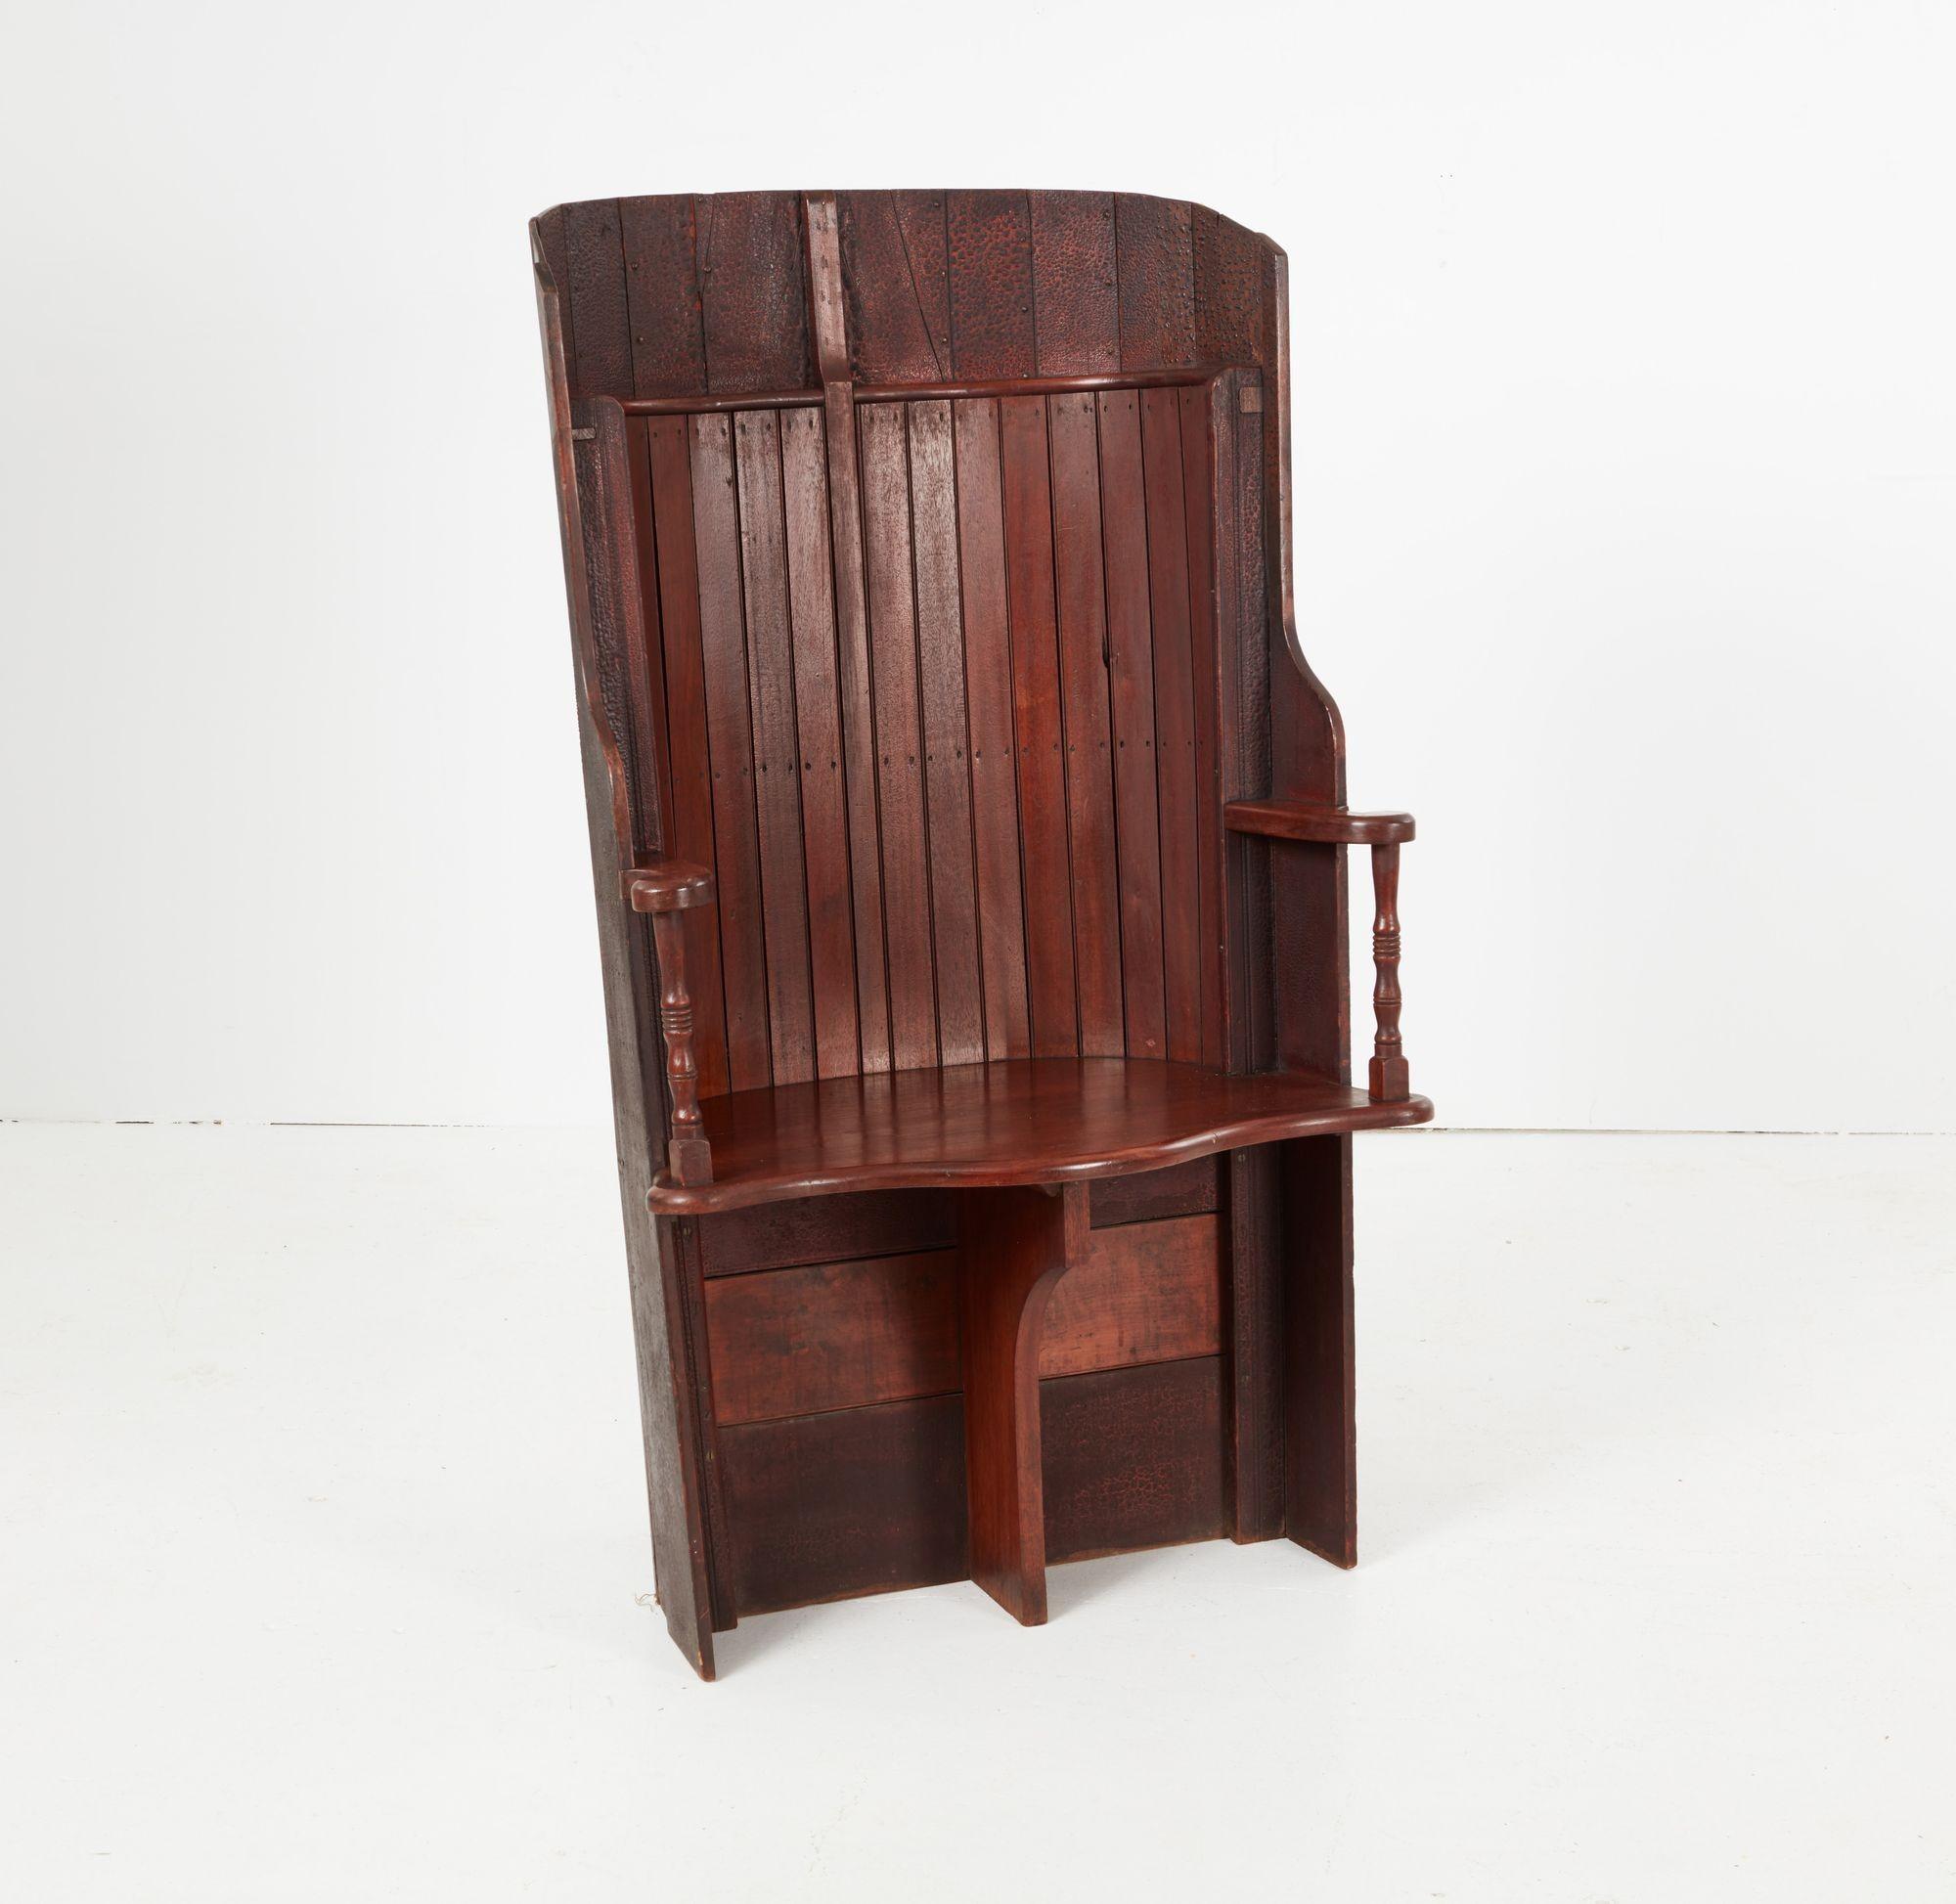 Un fauteuil unique avec un dossier enveloppant en forme de tonneau, fabriqué à partir de la coque d'un wherry, qui a conservé sa surface historique en écailles. Il est doté d'une bande intérieure de recouvrement poli, d'accoudoirs inclinés sur des